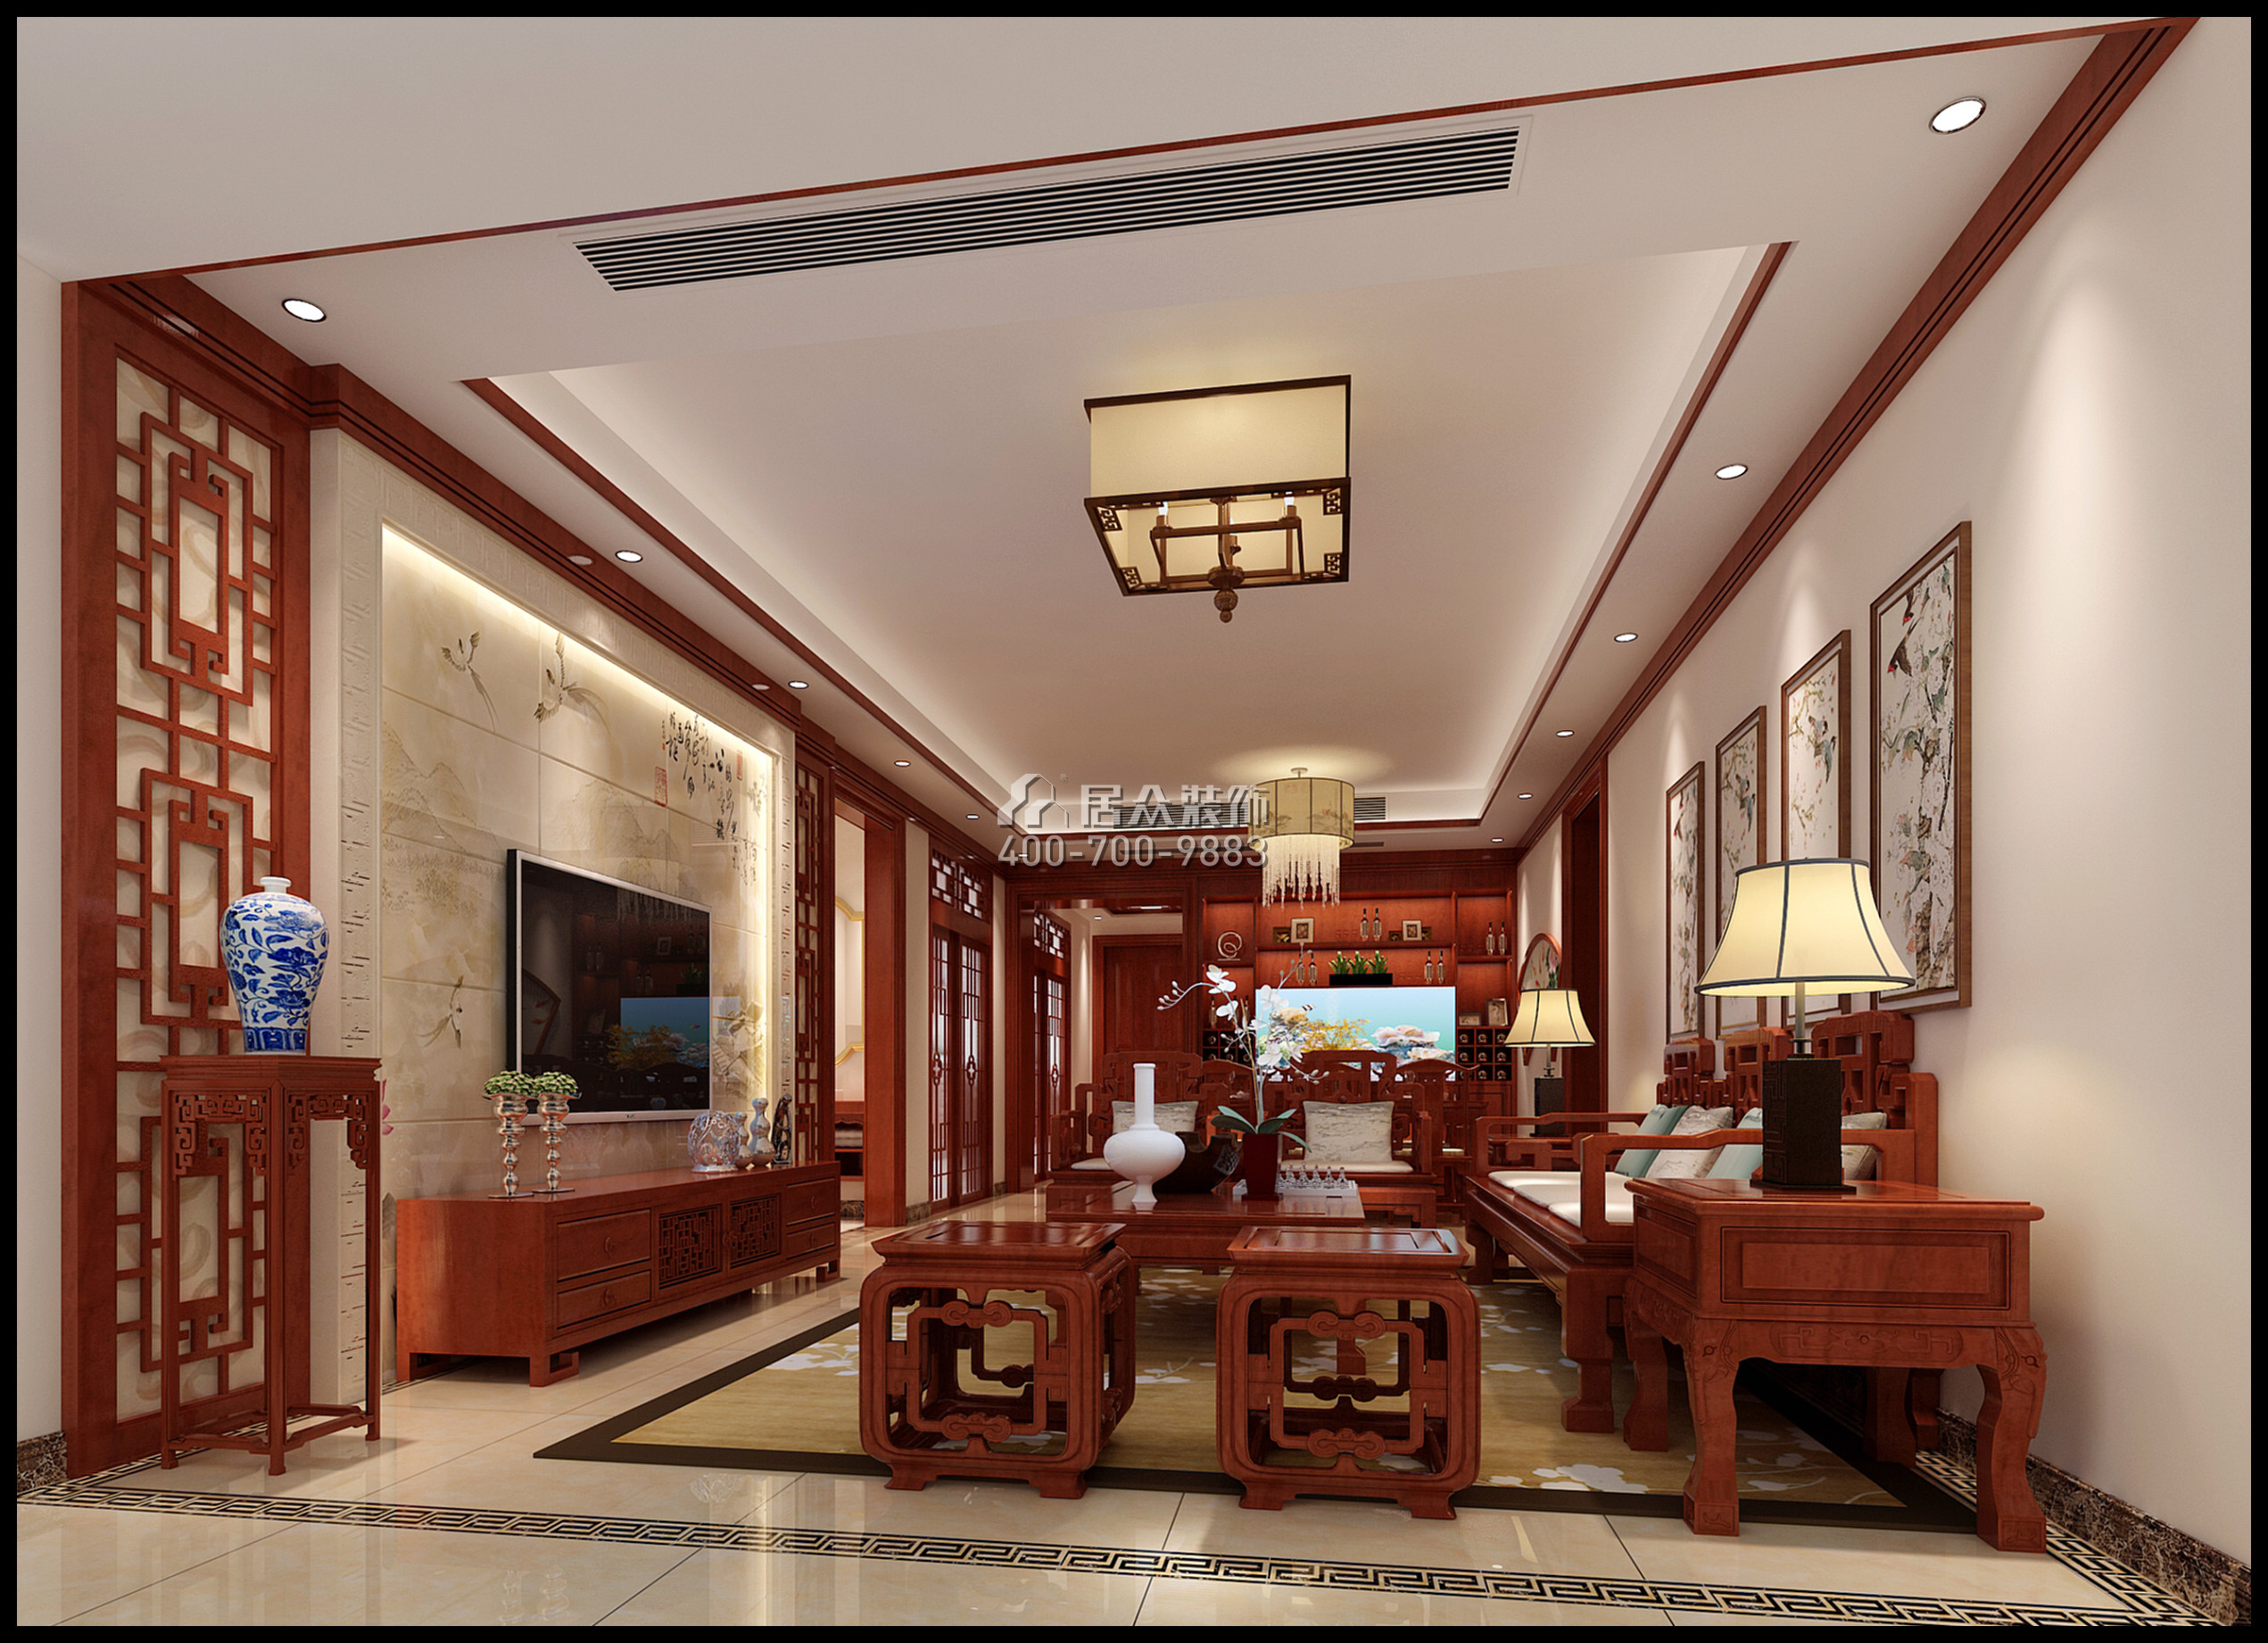 仁山智水花园一期140平方米中式风格平层户型客厅装修效果图